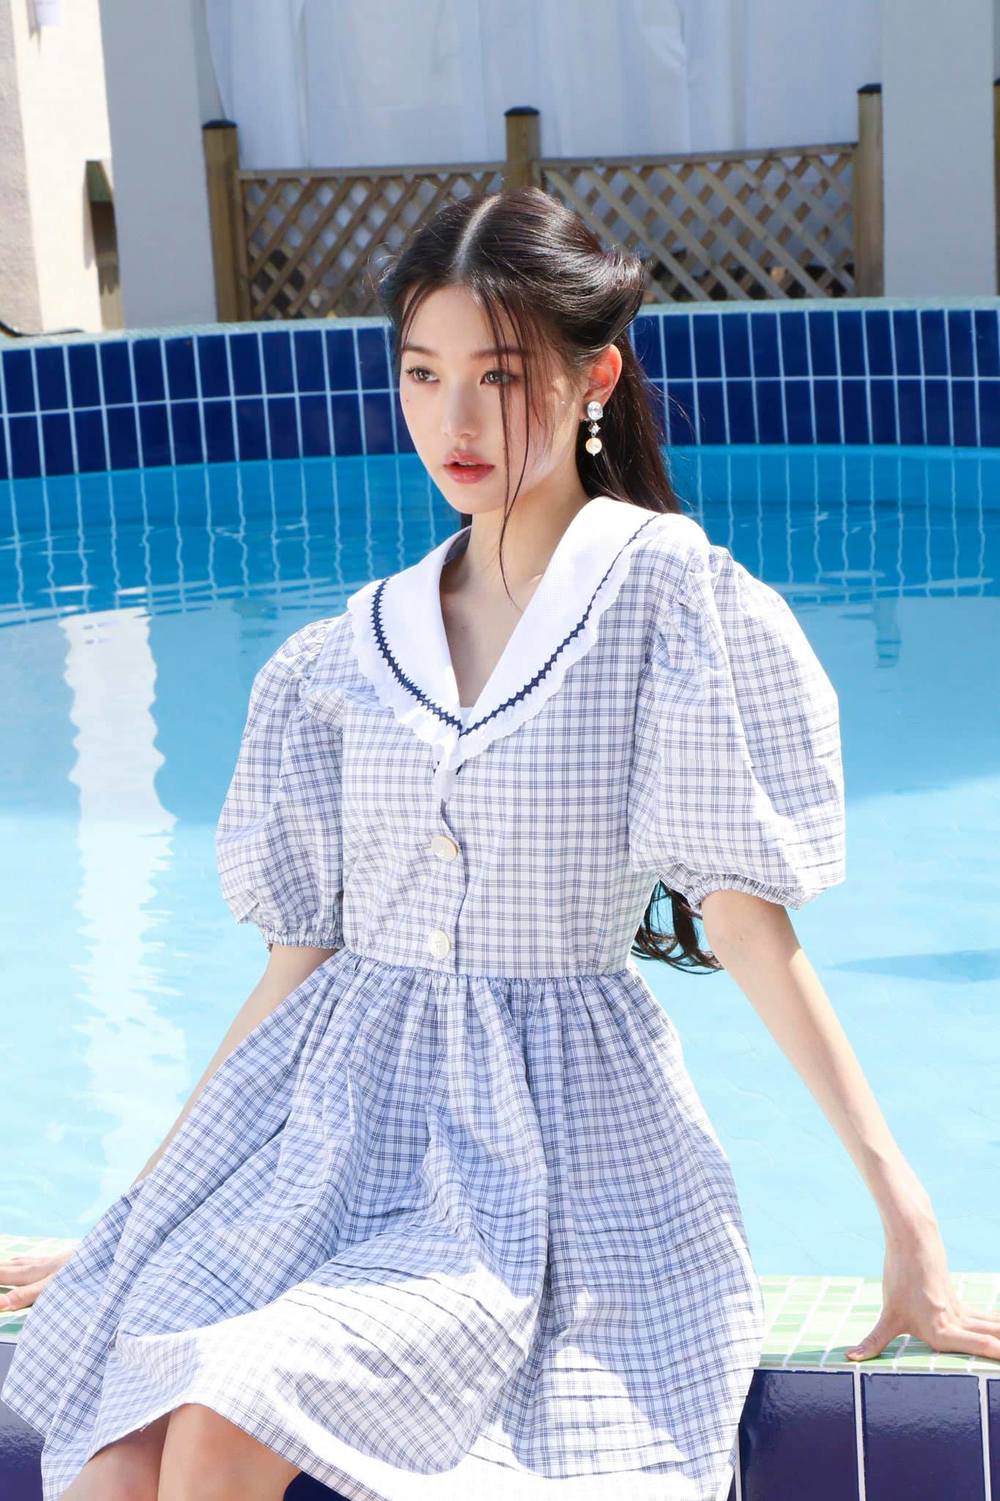  
Wonyoung yêu kiều khi diện váy babydoll. (Ảnh: Pinterest)